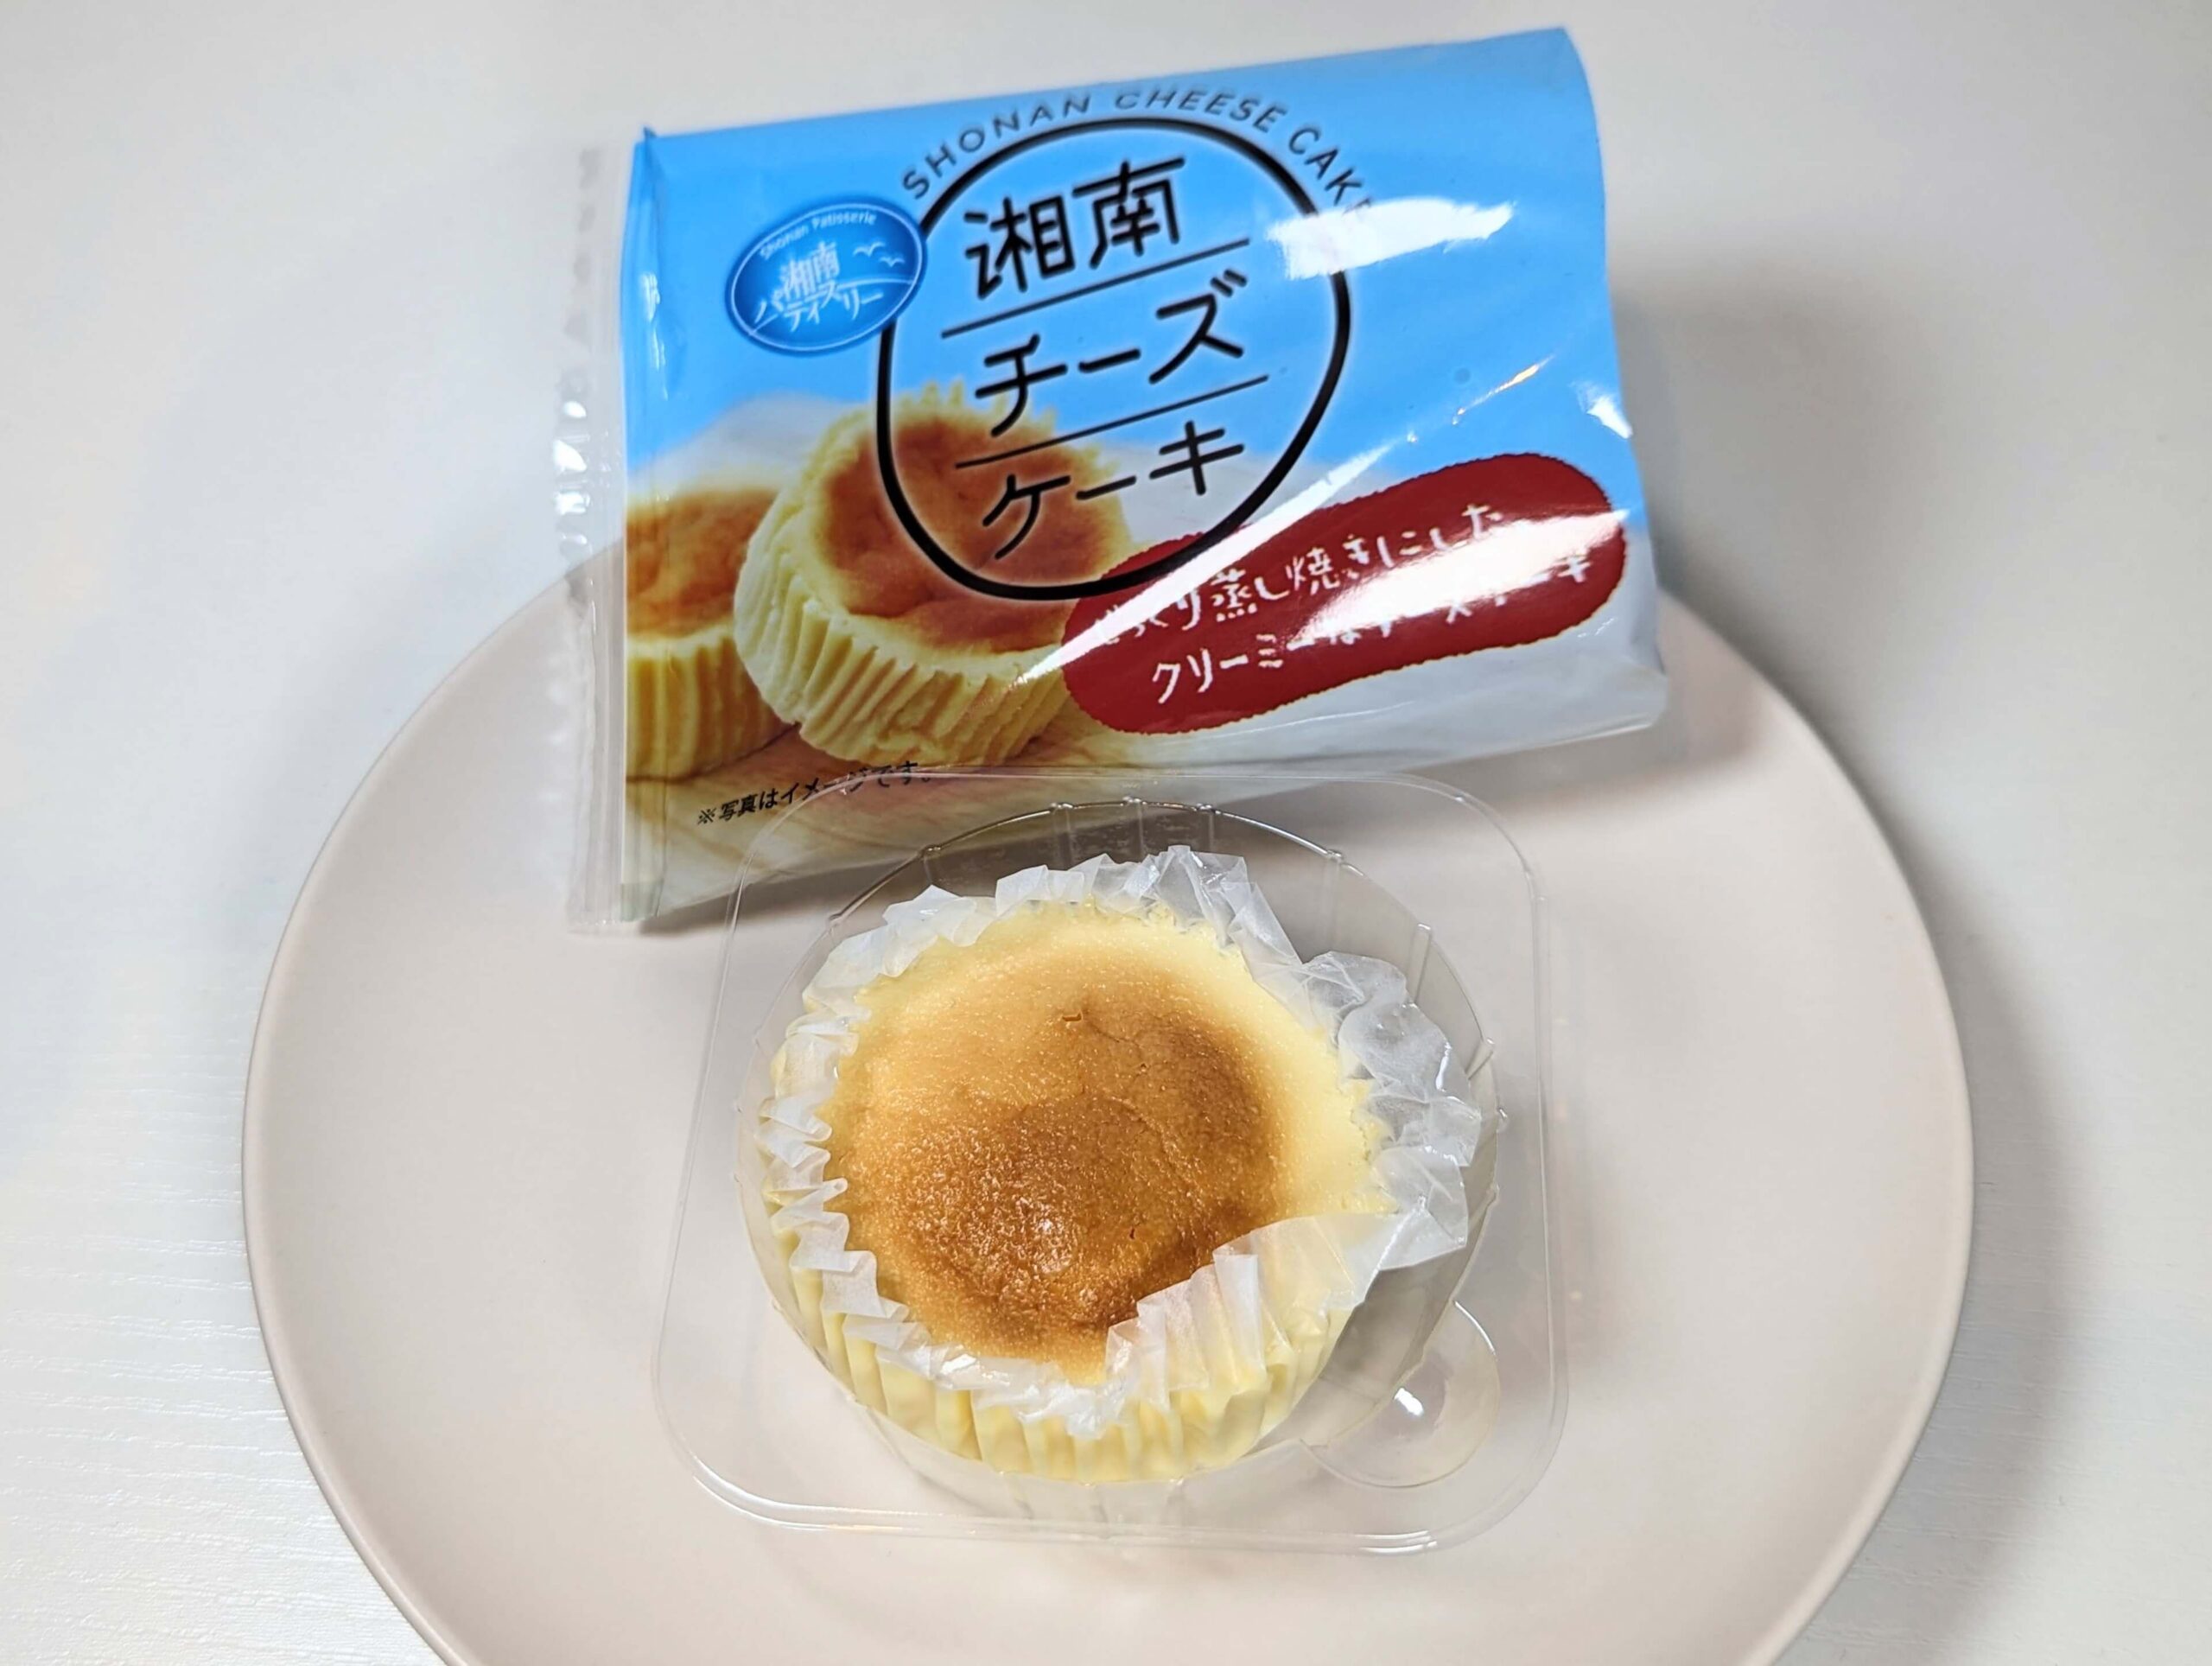 カンパーニュの「湘南チーズケーキ」 (2)